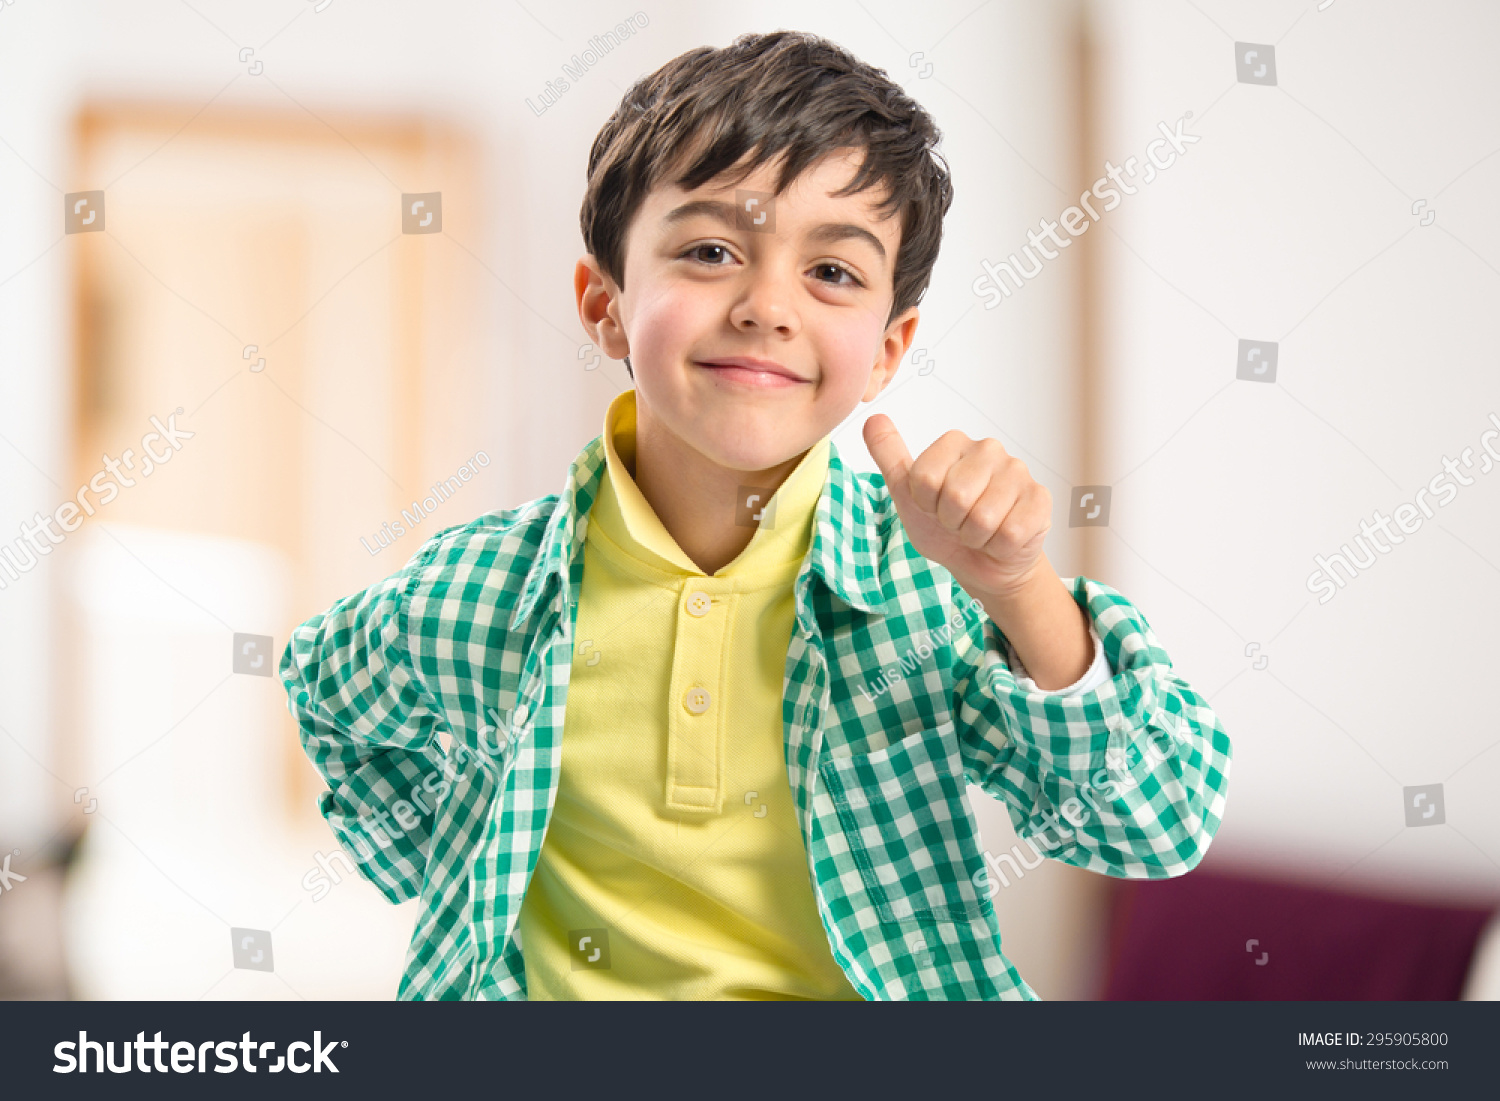 kid doing victory gesture #295905800